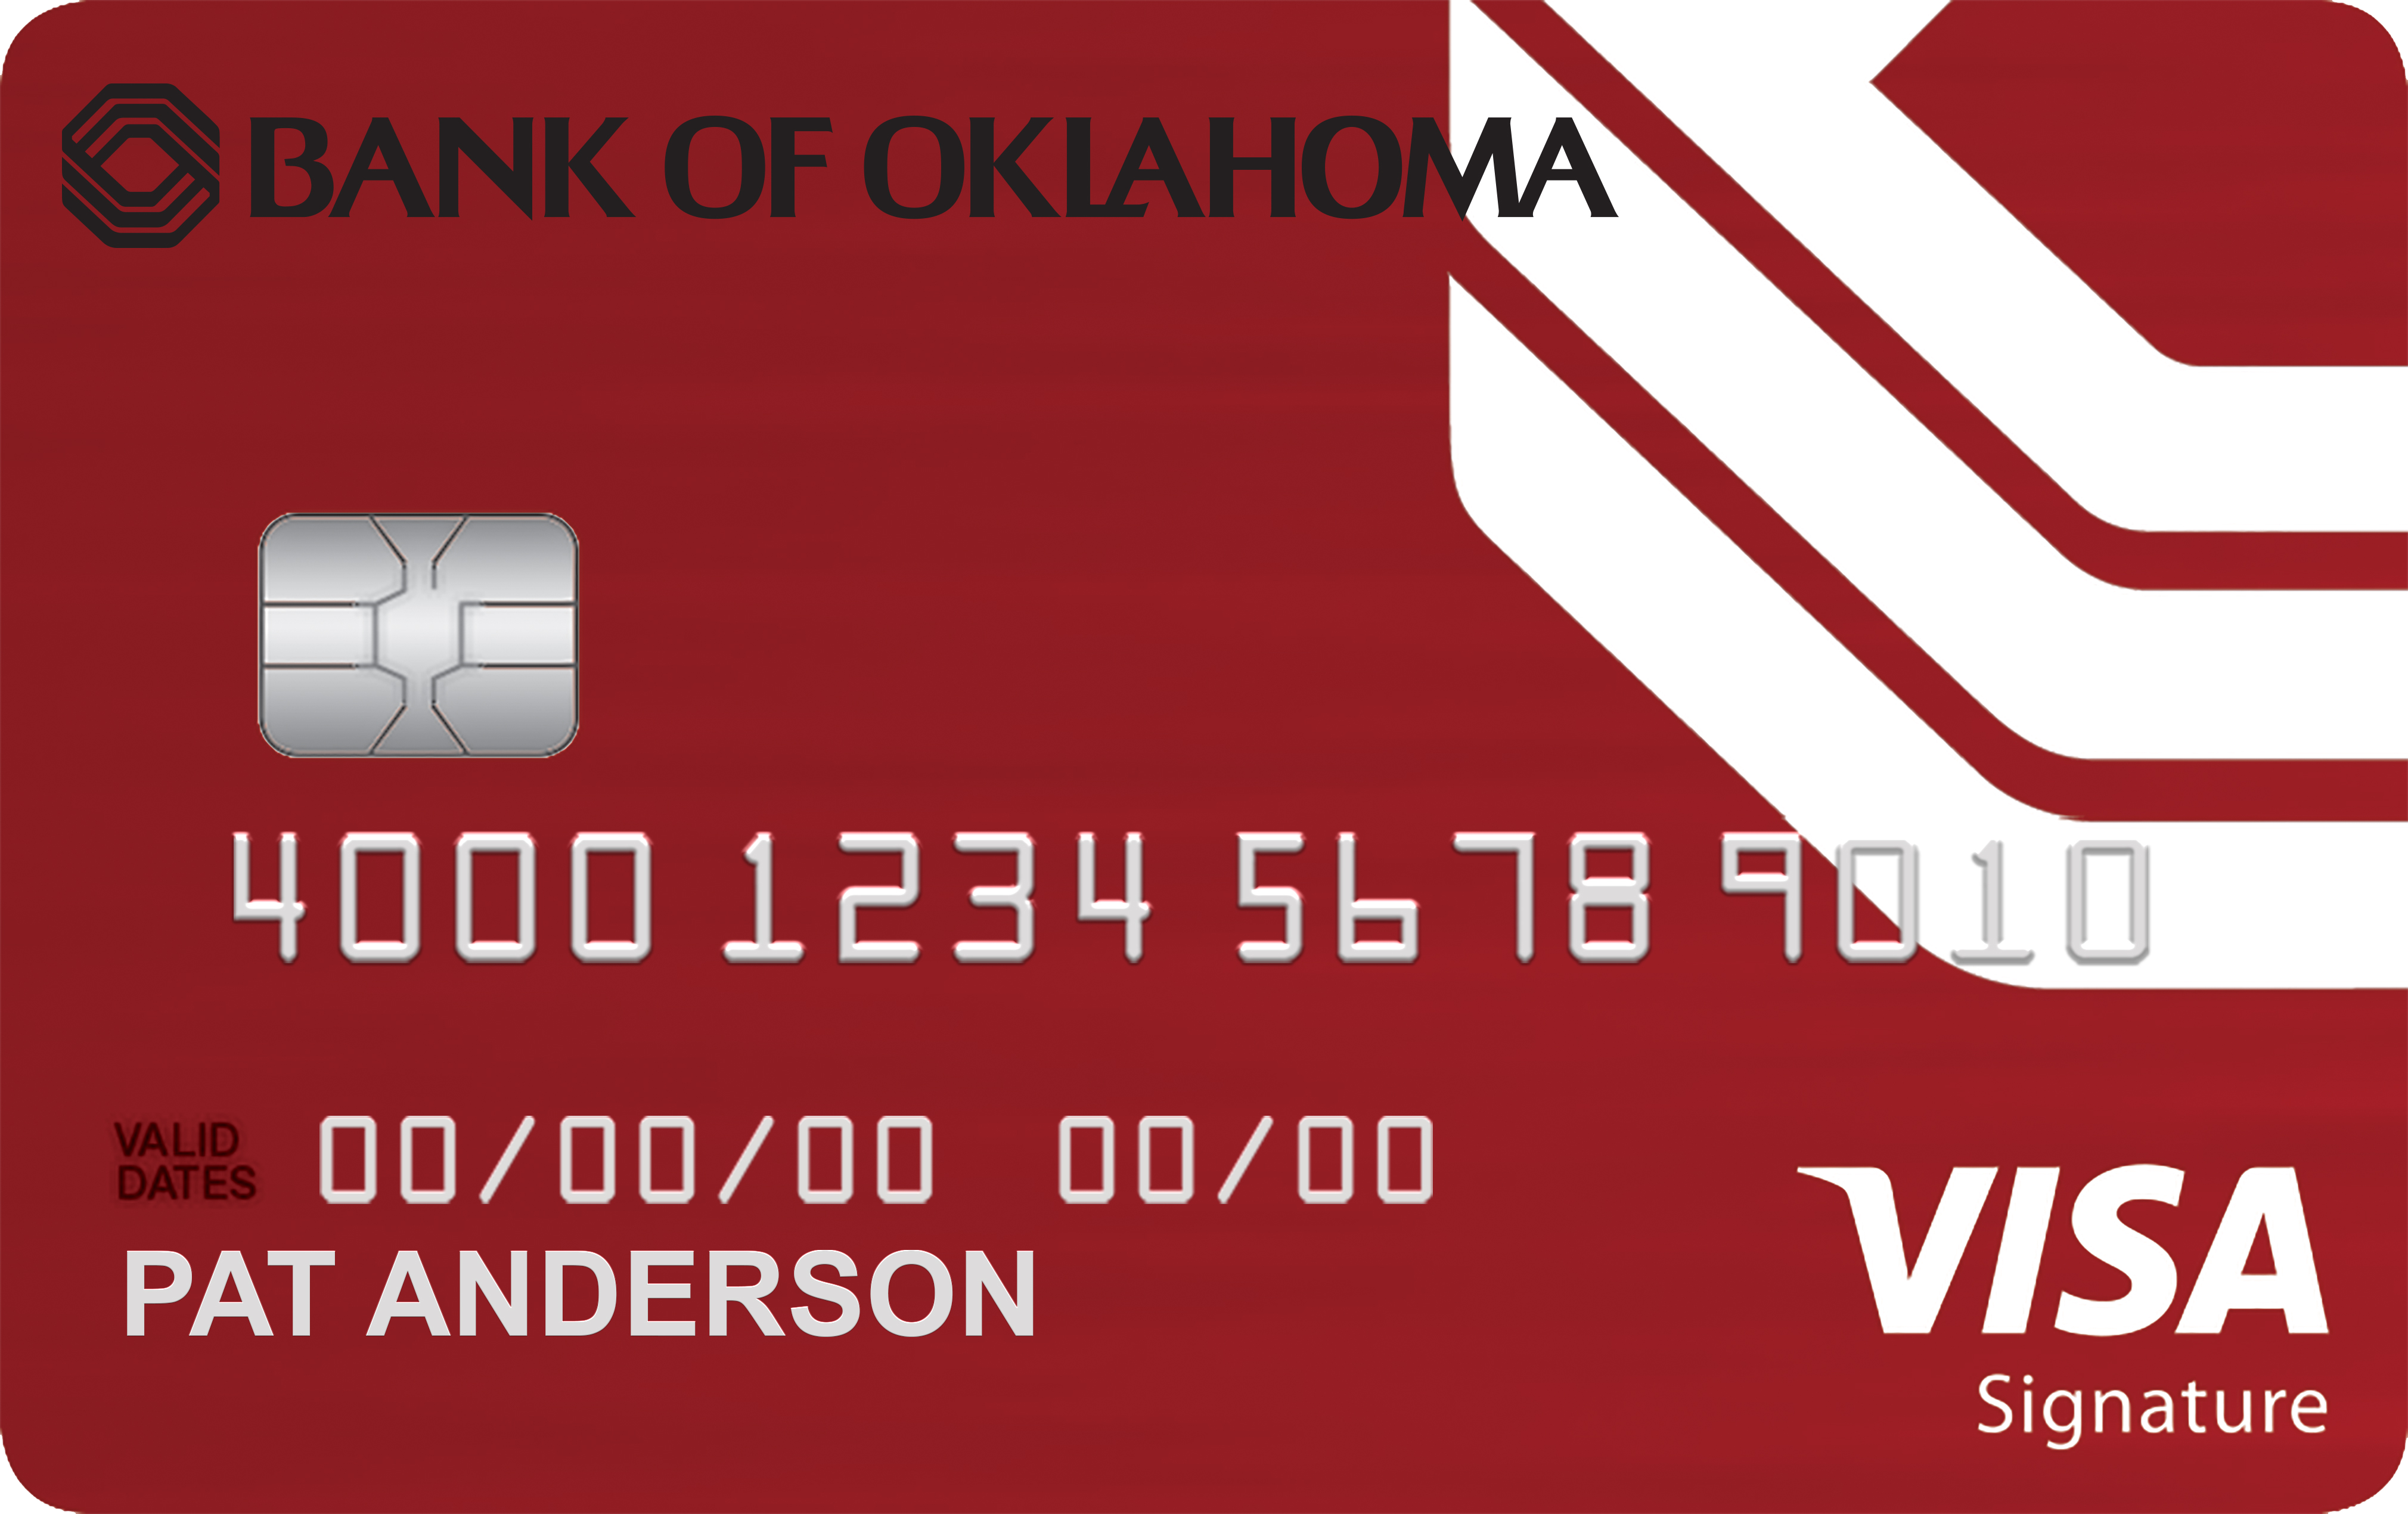 Bank of Oklahoma 